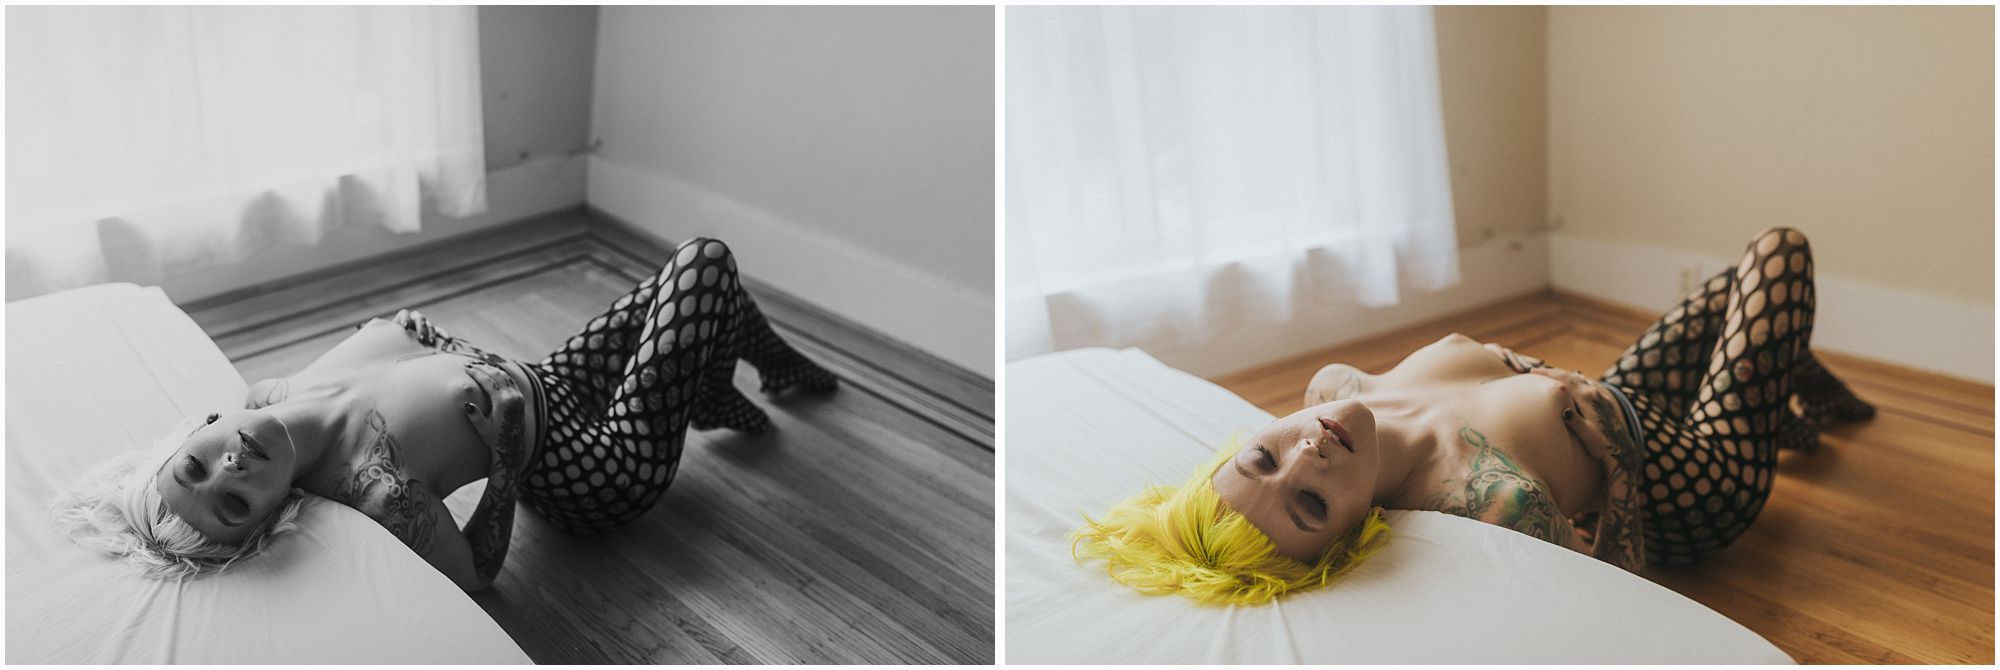 fishnet stockings on alternative model creative vancouver boudoir photographer